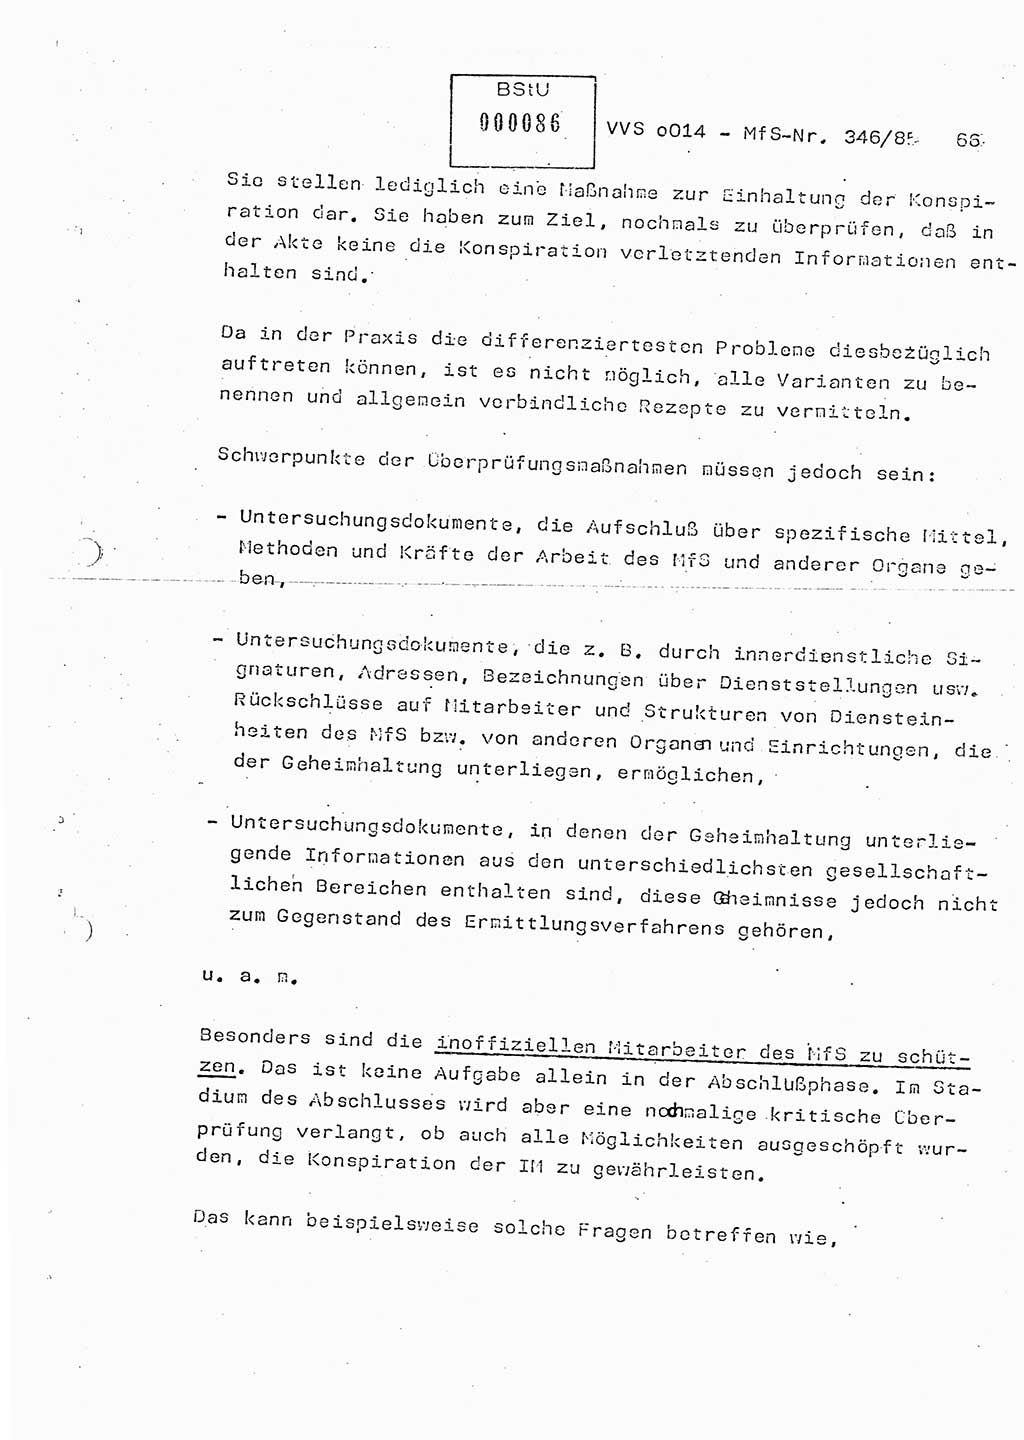 Lektion Ministerium für Staatssicherheit (MfS) [Deutsche Demokratische Republik (DDR)], Hauptabteilung (HA) Ⅸ, Vertrauliche Verschlußsache (VVS) o014-346/85, Berlin 1985, Seite 66 (Lekt. MfS DDR HA Ⅸ VVS o014-346/85 1985, S. 66)